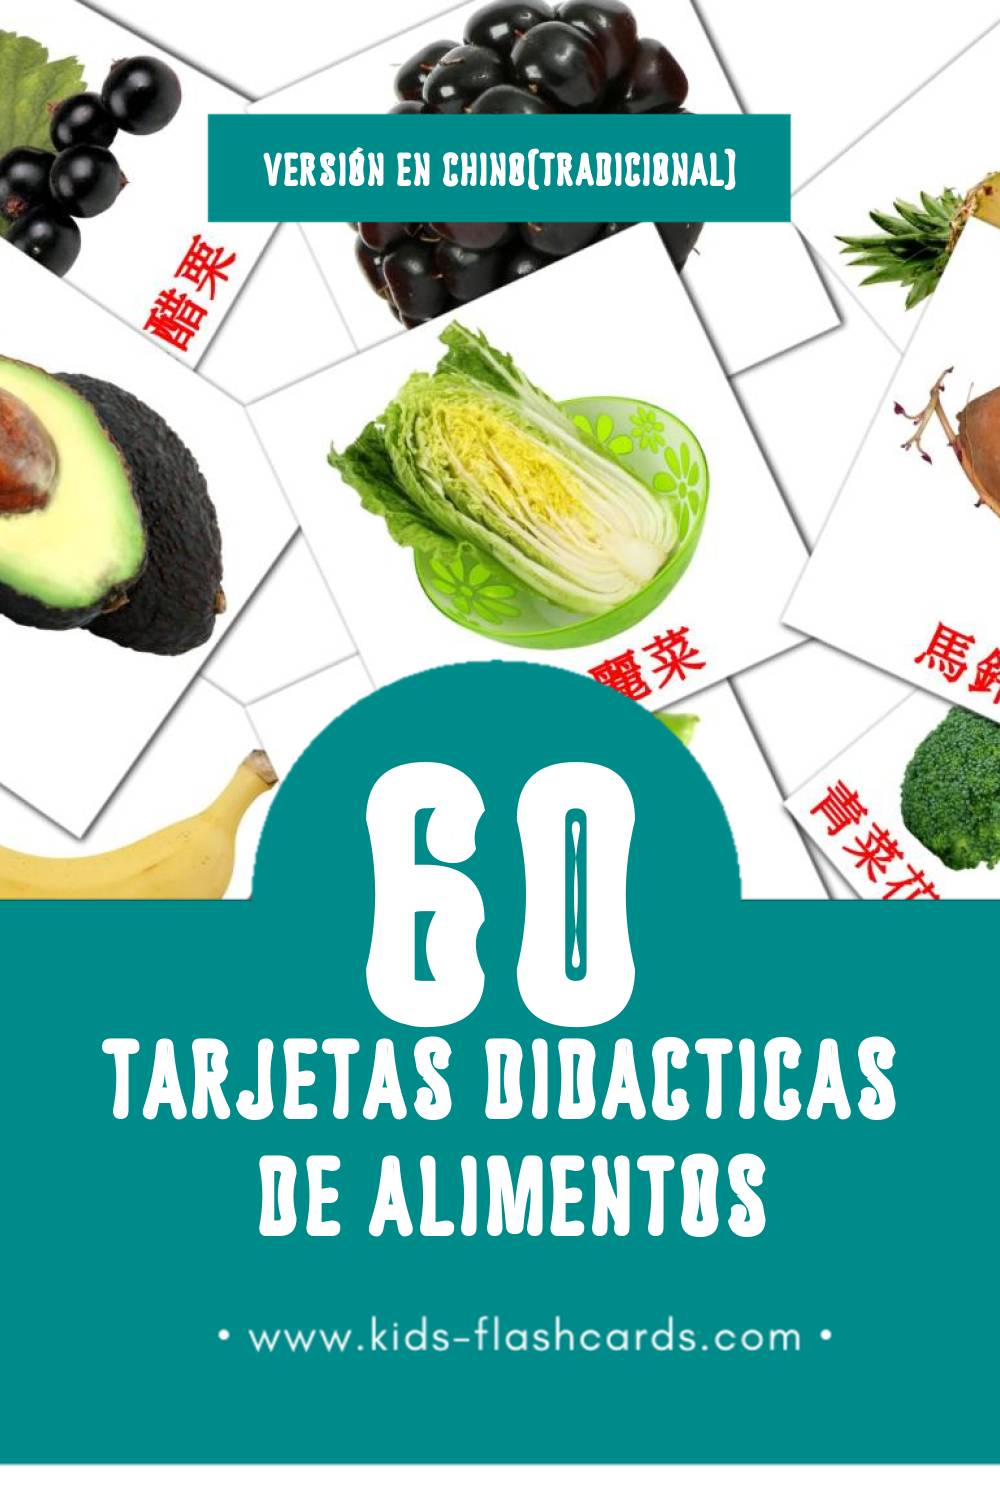 Tarjetas visuales de 食物 para niños pequeños (60 tarjetas en Chino(tradicional))